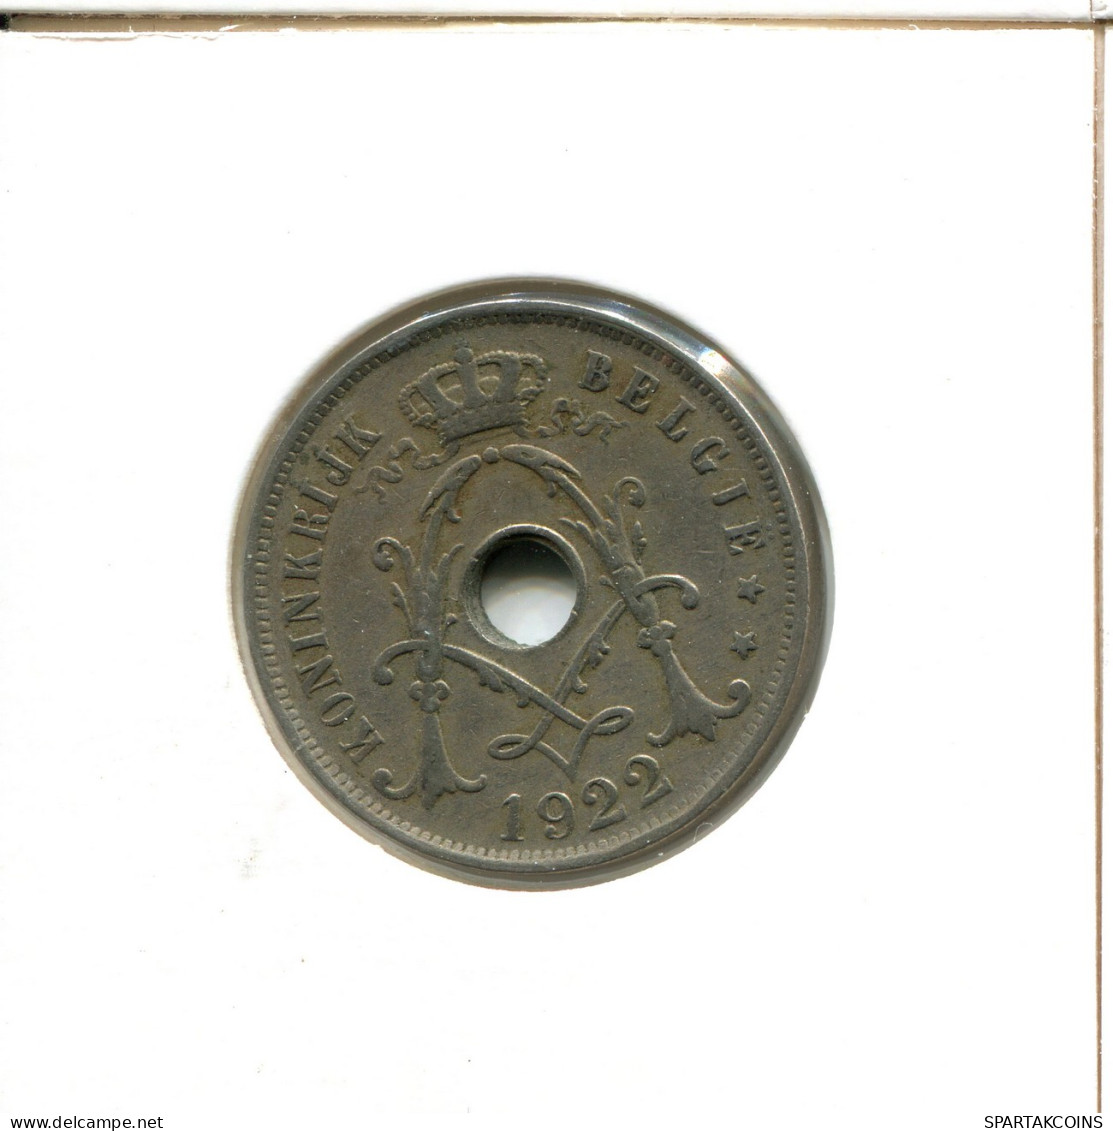 25 CENTIMES 1922 BELGIUM Coin DUTCH Text #AX404.U - 25 Cent